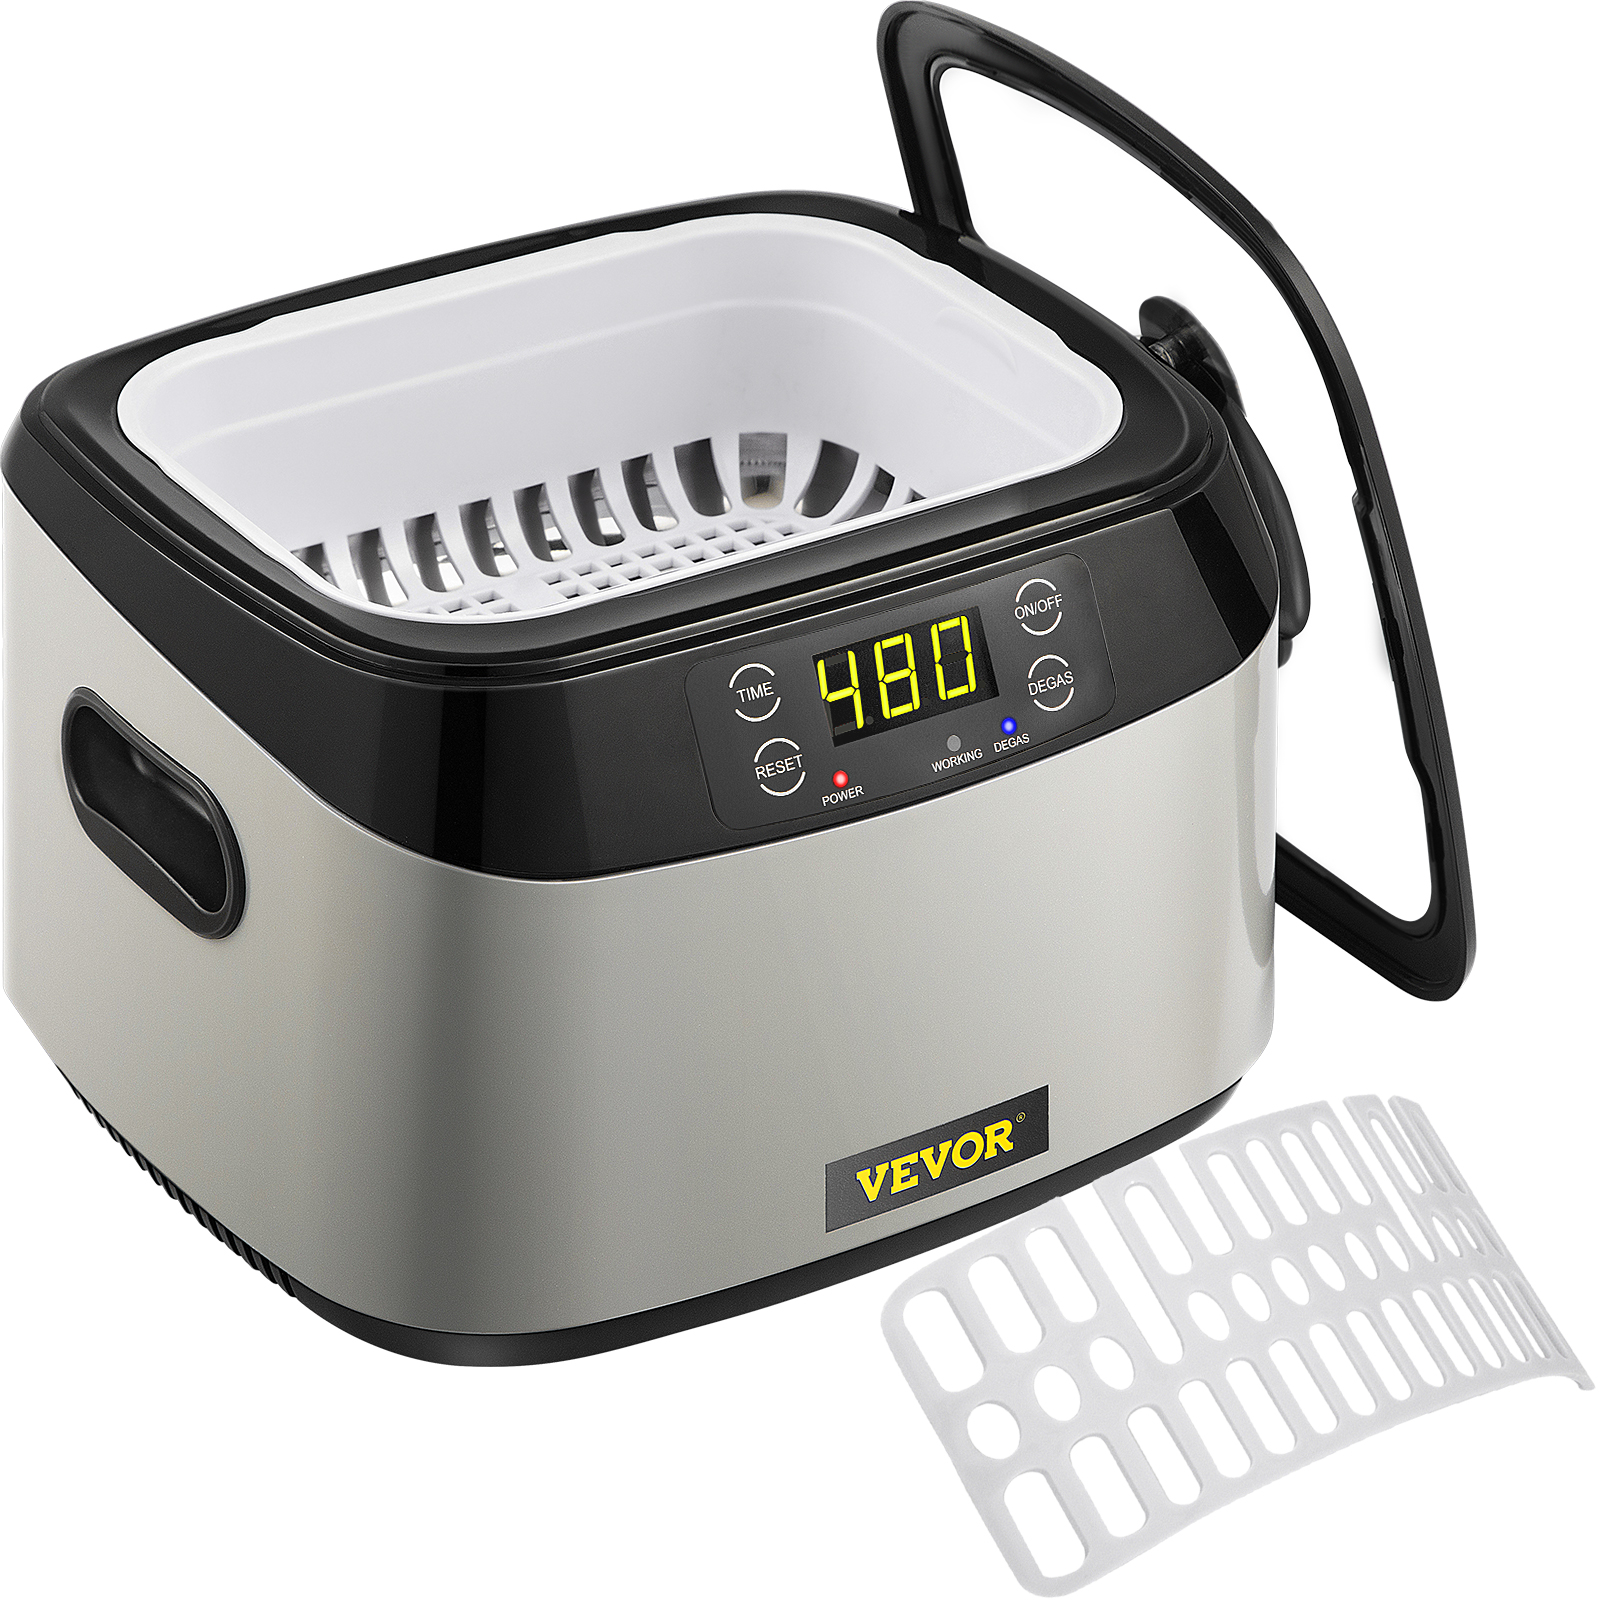 Limpiador ultrasónico VEVOR Máquina de limpieza por ultrasonidos 500ML  Blanco para joyería